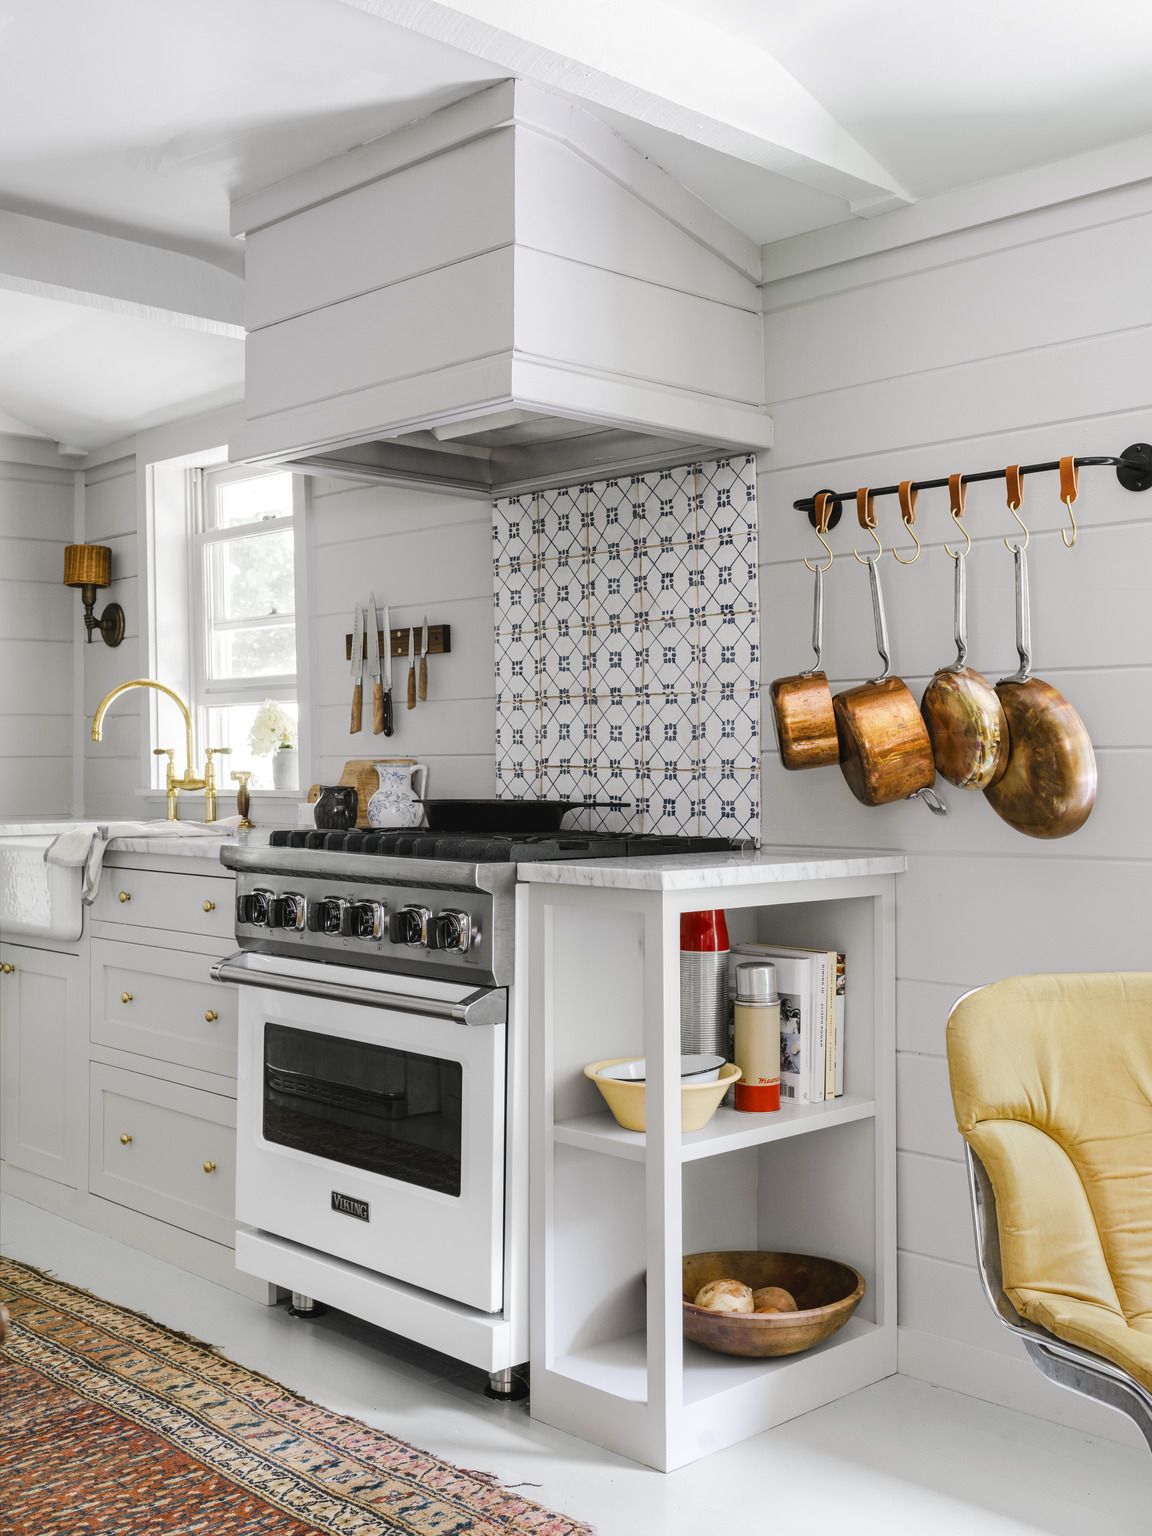 20 Best White Kitchen Ideas   Small White Kitchens 20